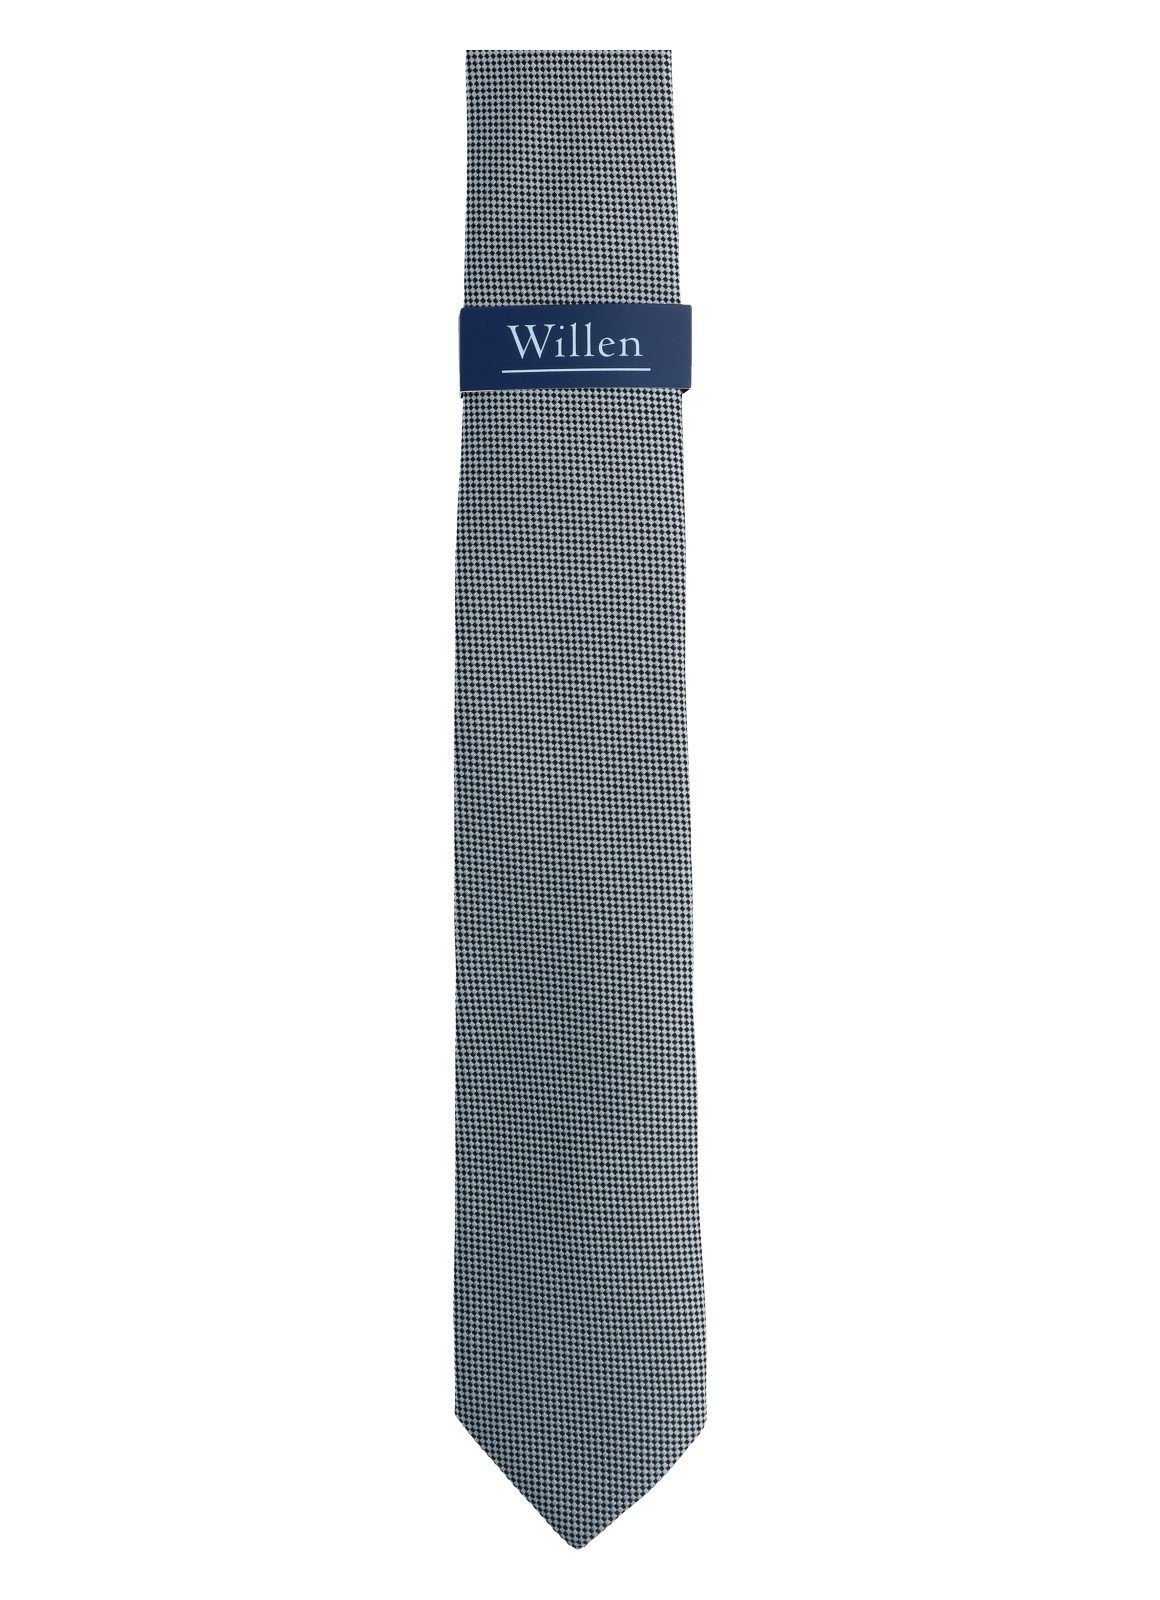 Willen grau Krawatte Krawatte WILLEN